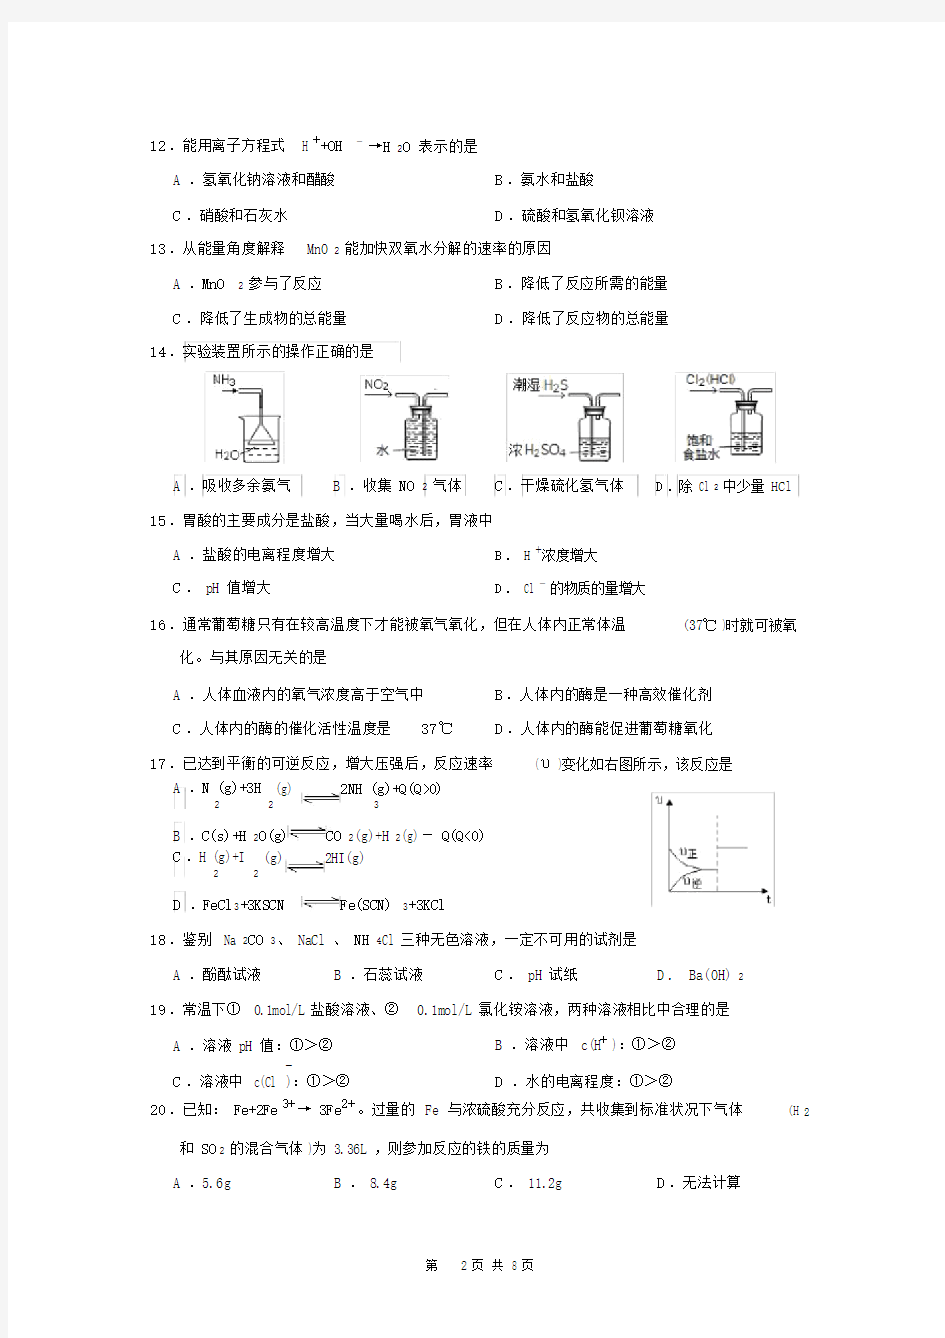 (完整版)上海化学高一期末考试卷(试卷及答案).docx